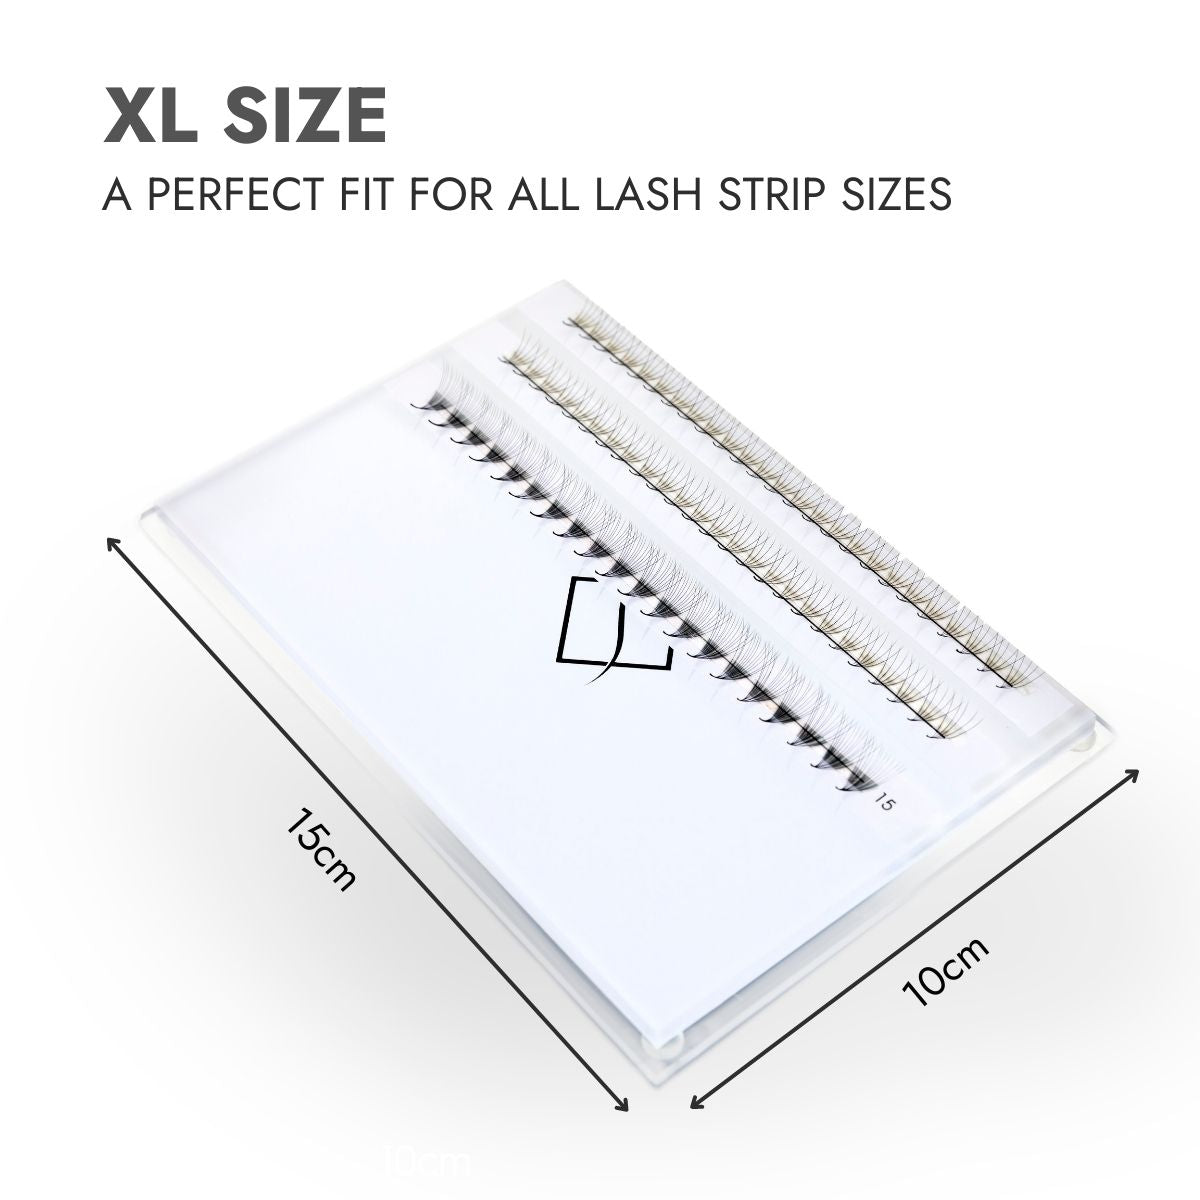 My Lash Store XL Size Lash Tile Palette - With Cover